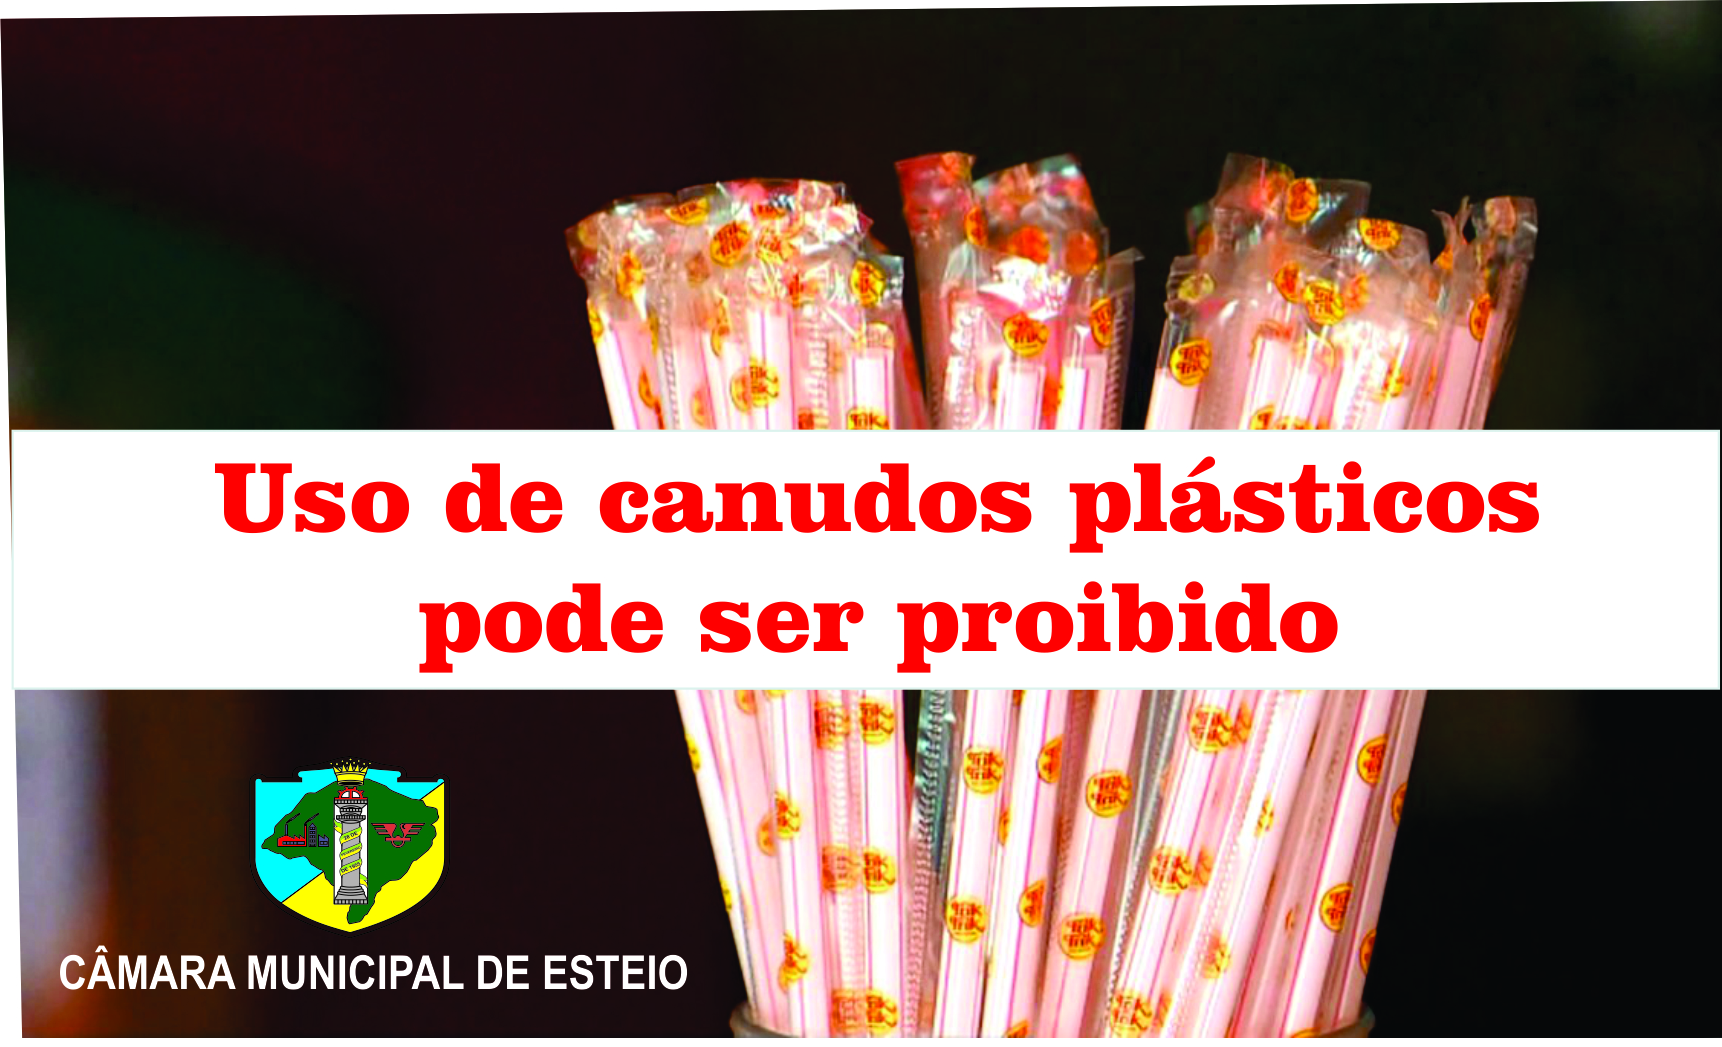 Comercialização de canudos de plástico pode ser proibida em Esteio